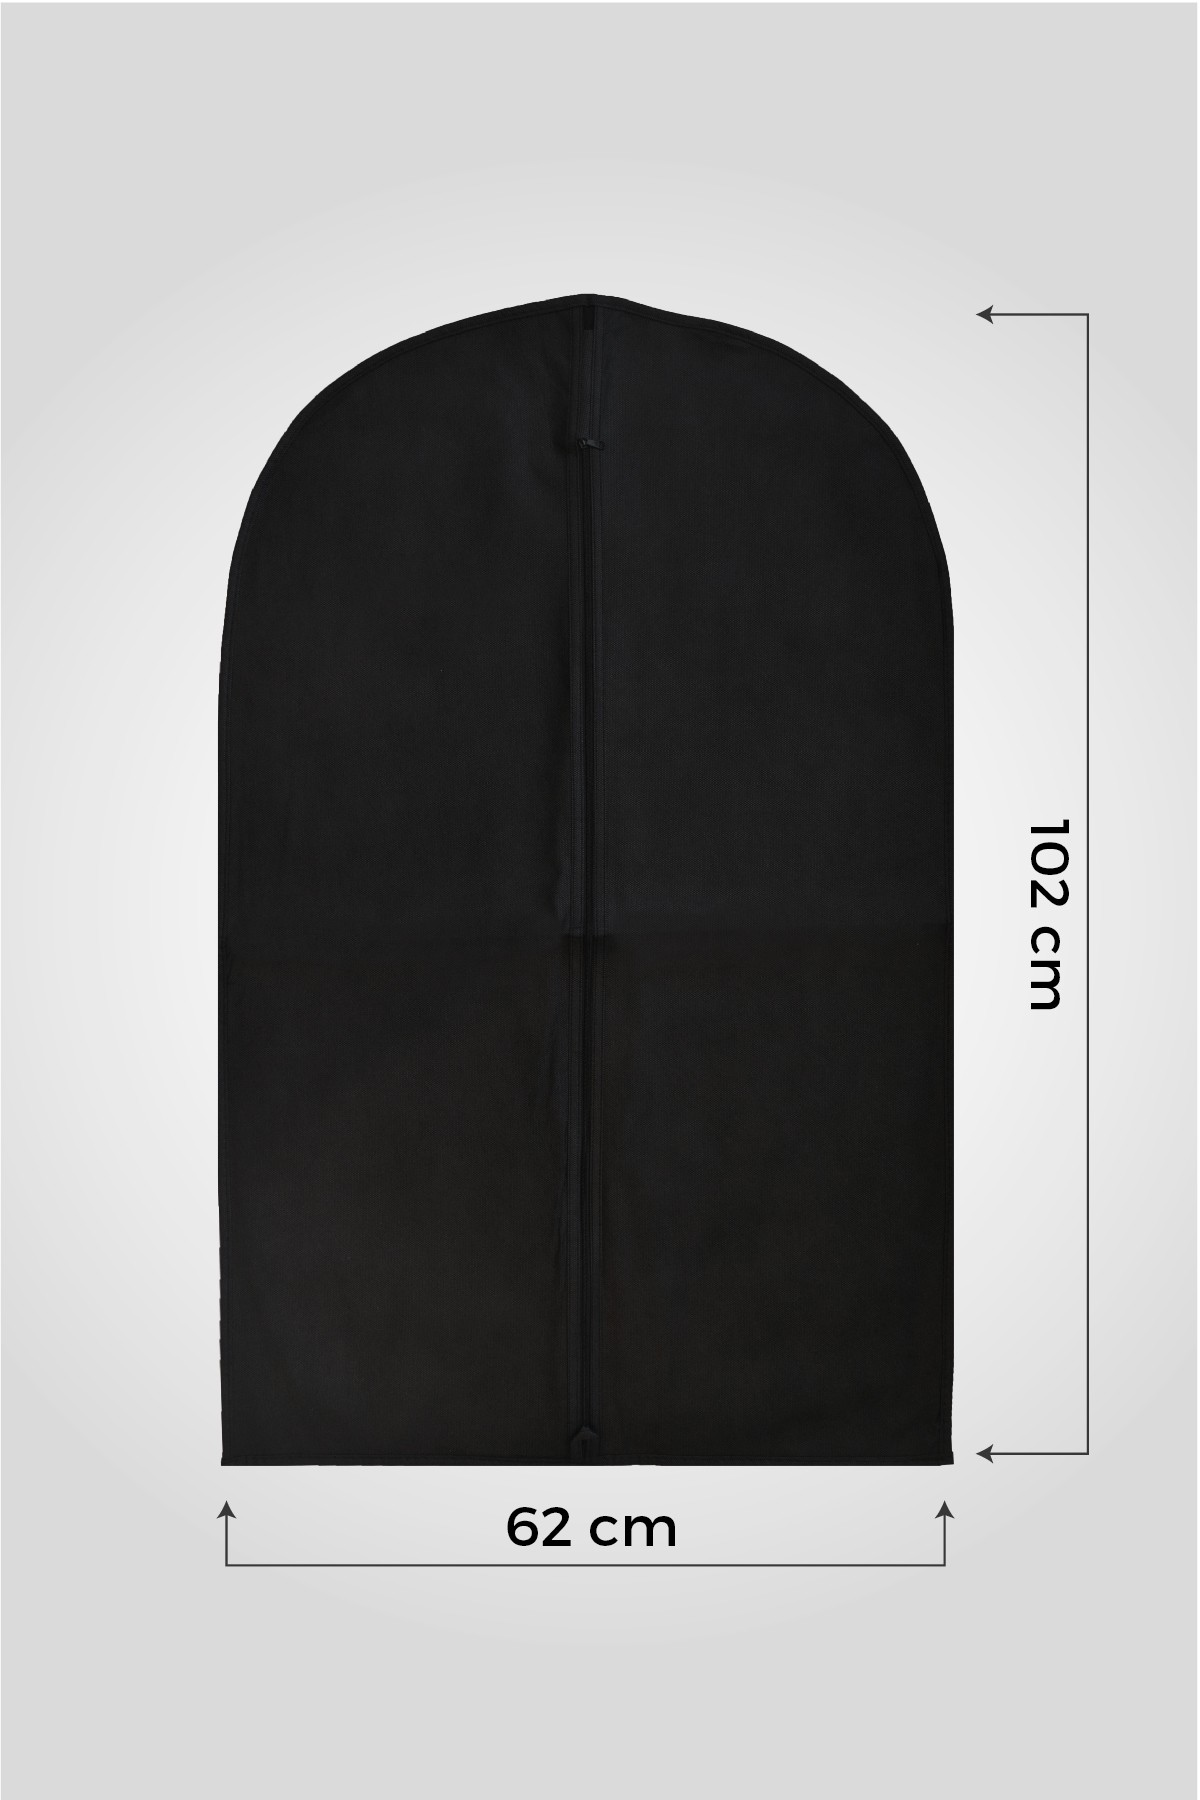 Siyah Gamboç Ceket - Kaban - Takım Elbise Kılıfı 62 x 102cm. 5 Adet